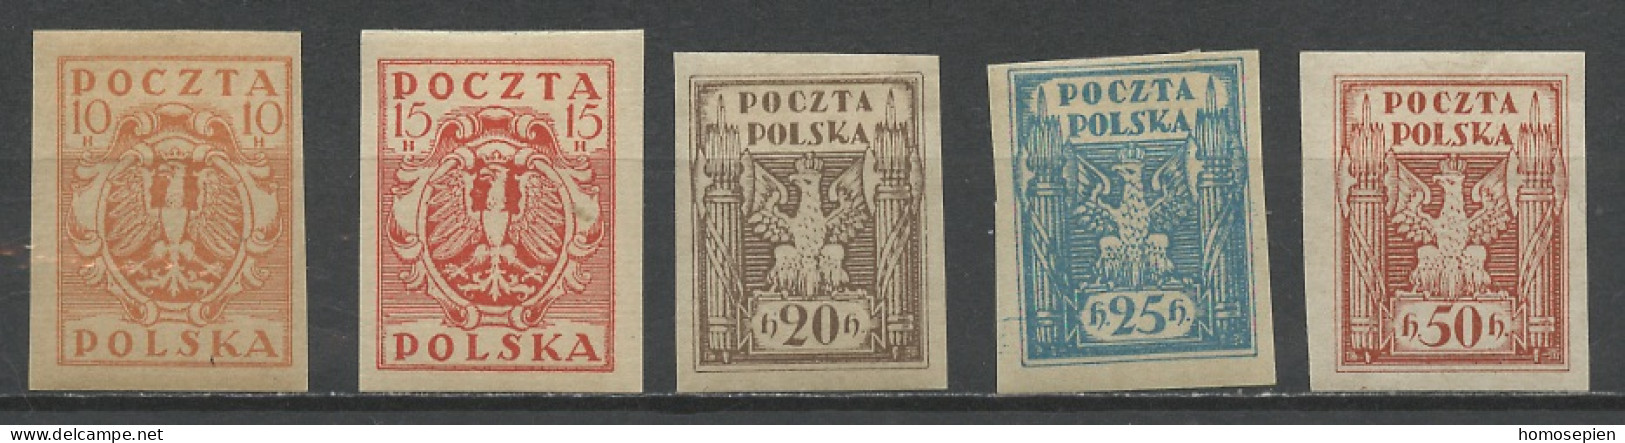 Pologne - Poland - Polen 1919 Y&T N°174 à 178 - Michel N°68 à 72 * - Sujets Divers - Ongebruikt